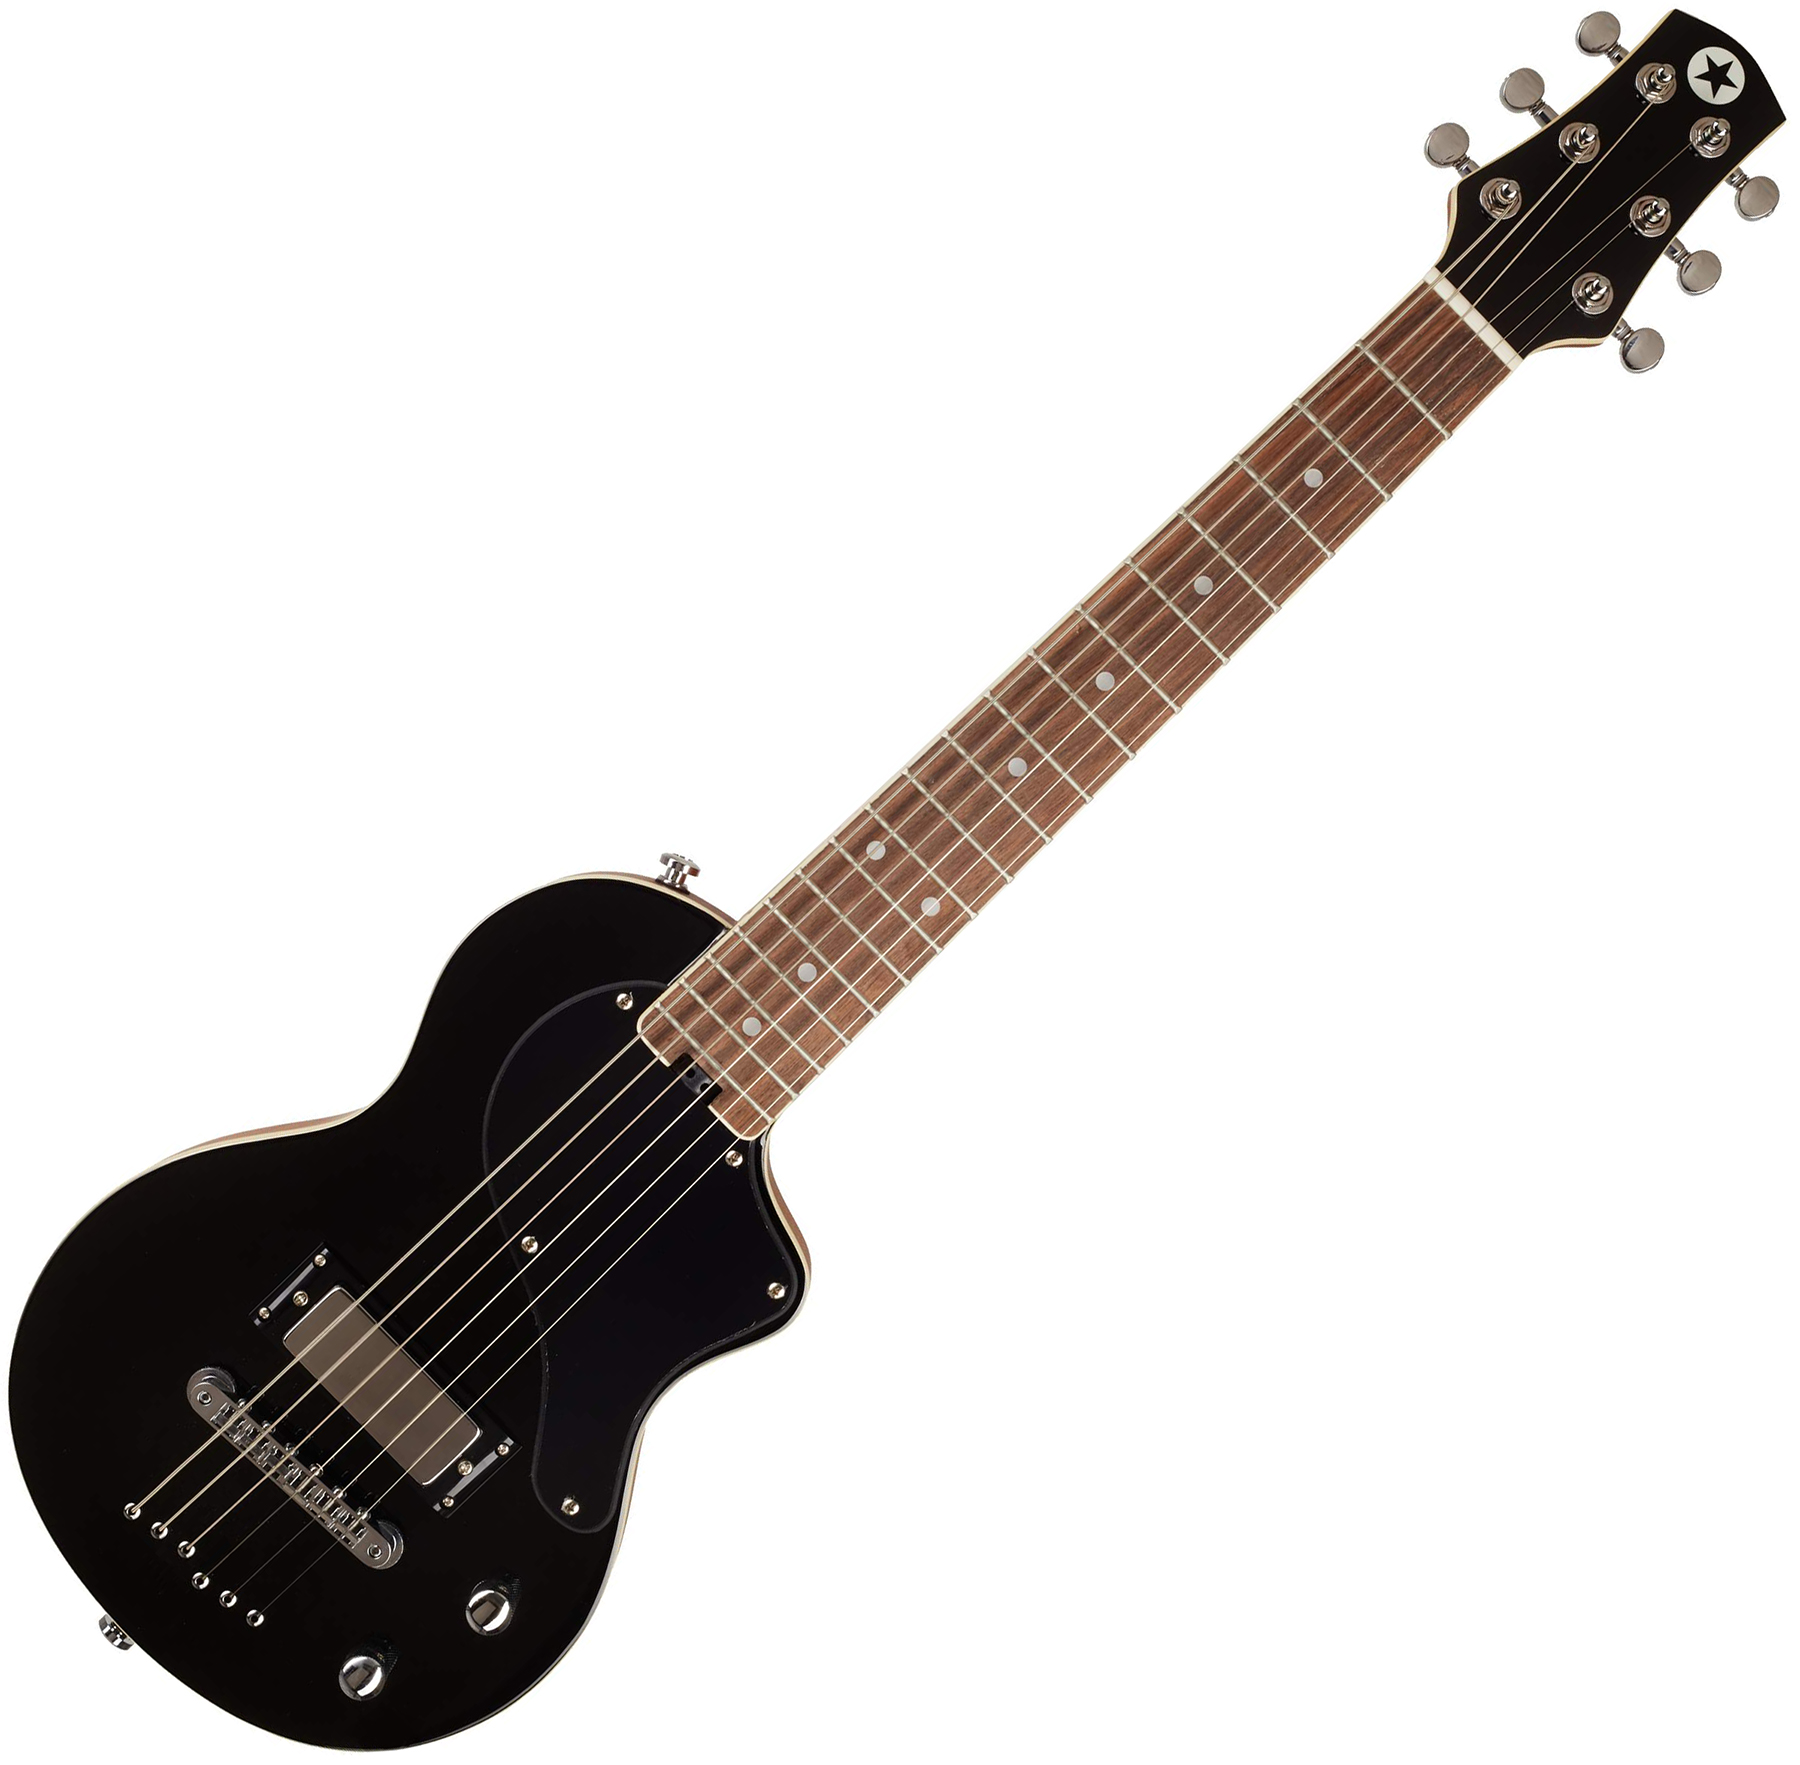 Blackstar Carry-on Travel Guitar Standard Pack +amplug2 Fly +housse - Jet Black - Electric guitar set - Variation 1